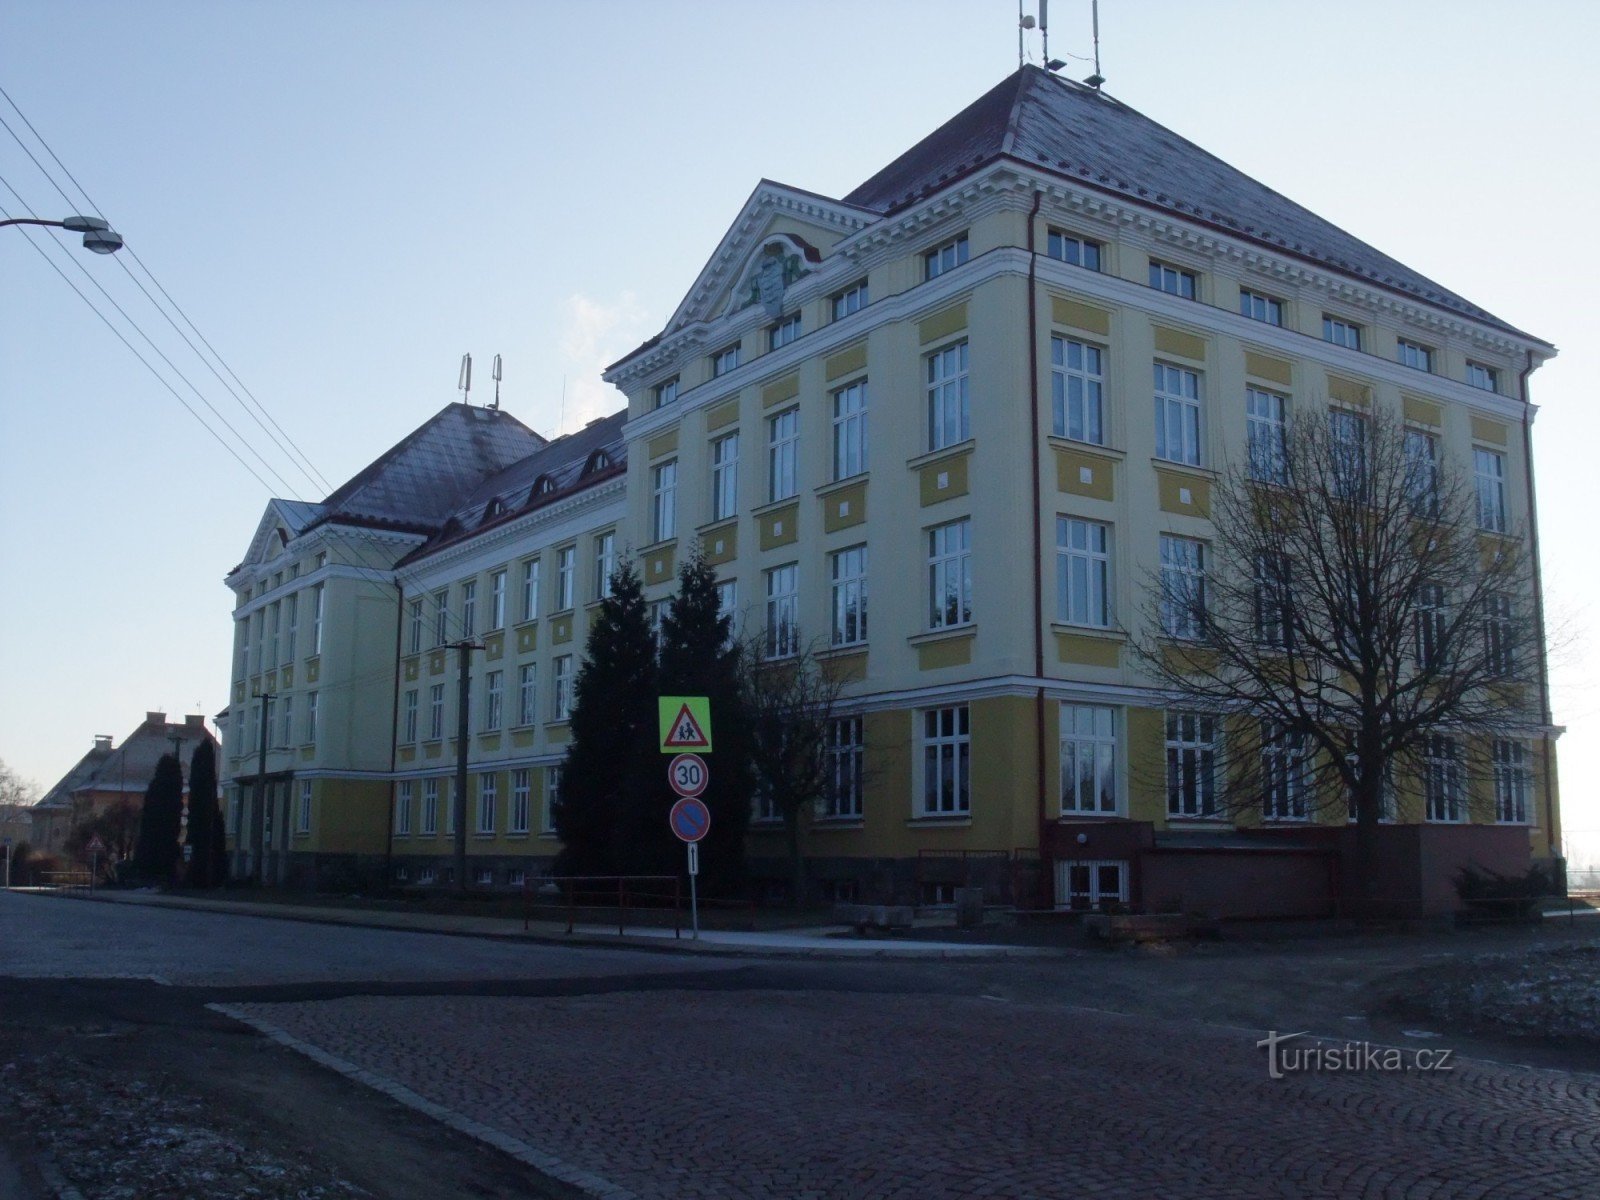 3a scuola elementare, via Okružní, Aš. A destra dell'edificio c'è un sentiero che porta alla paloučka di Beneš